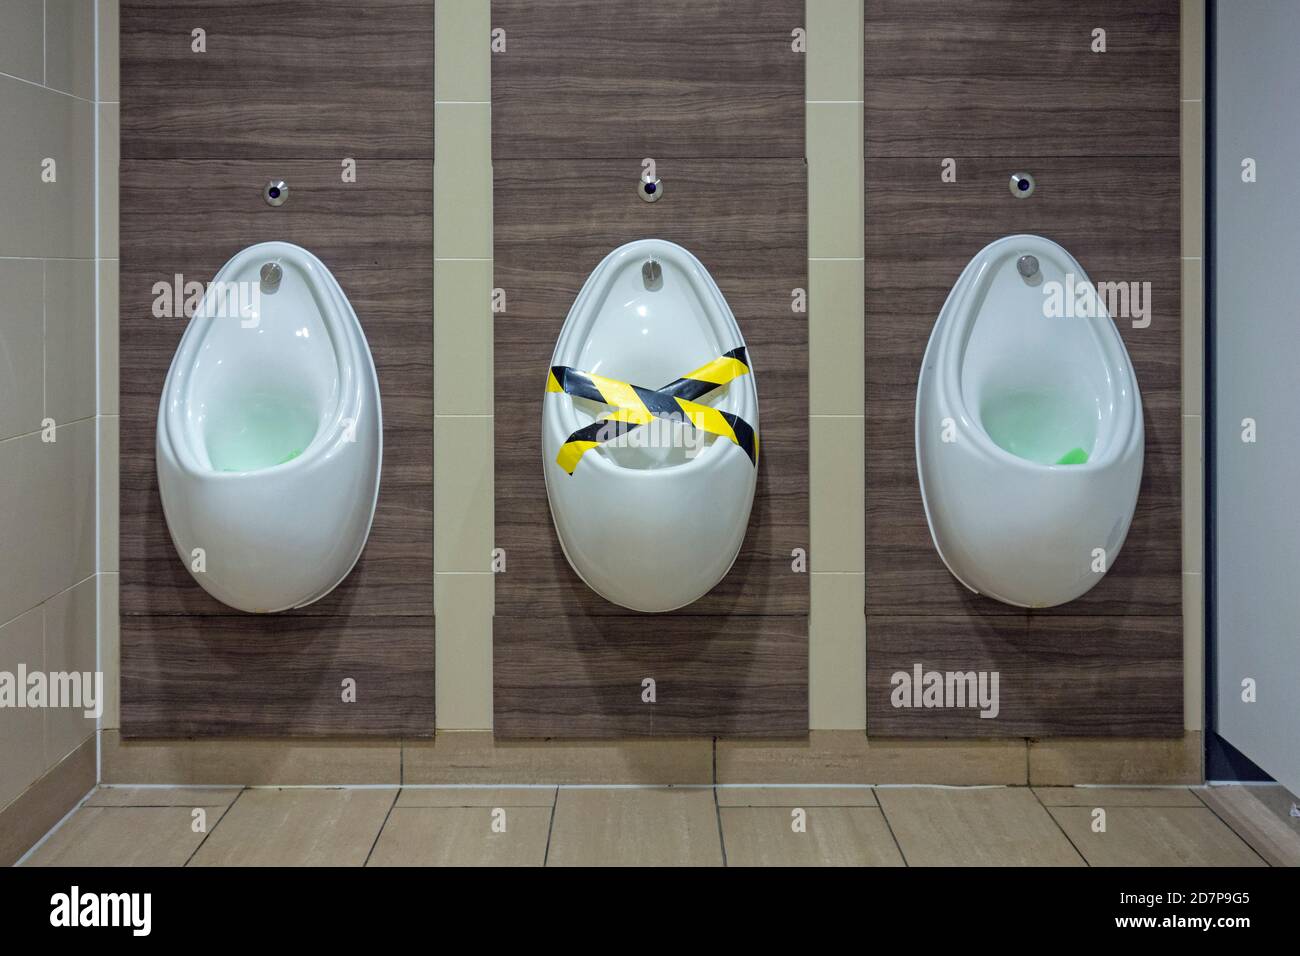 Herren Urinale mit einem Urinal abgetapst, Edinburgh Airport, Schottland Stockfoto